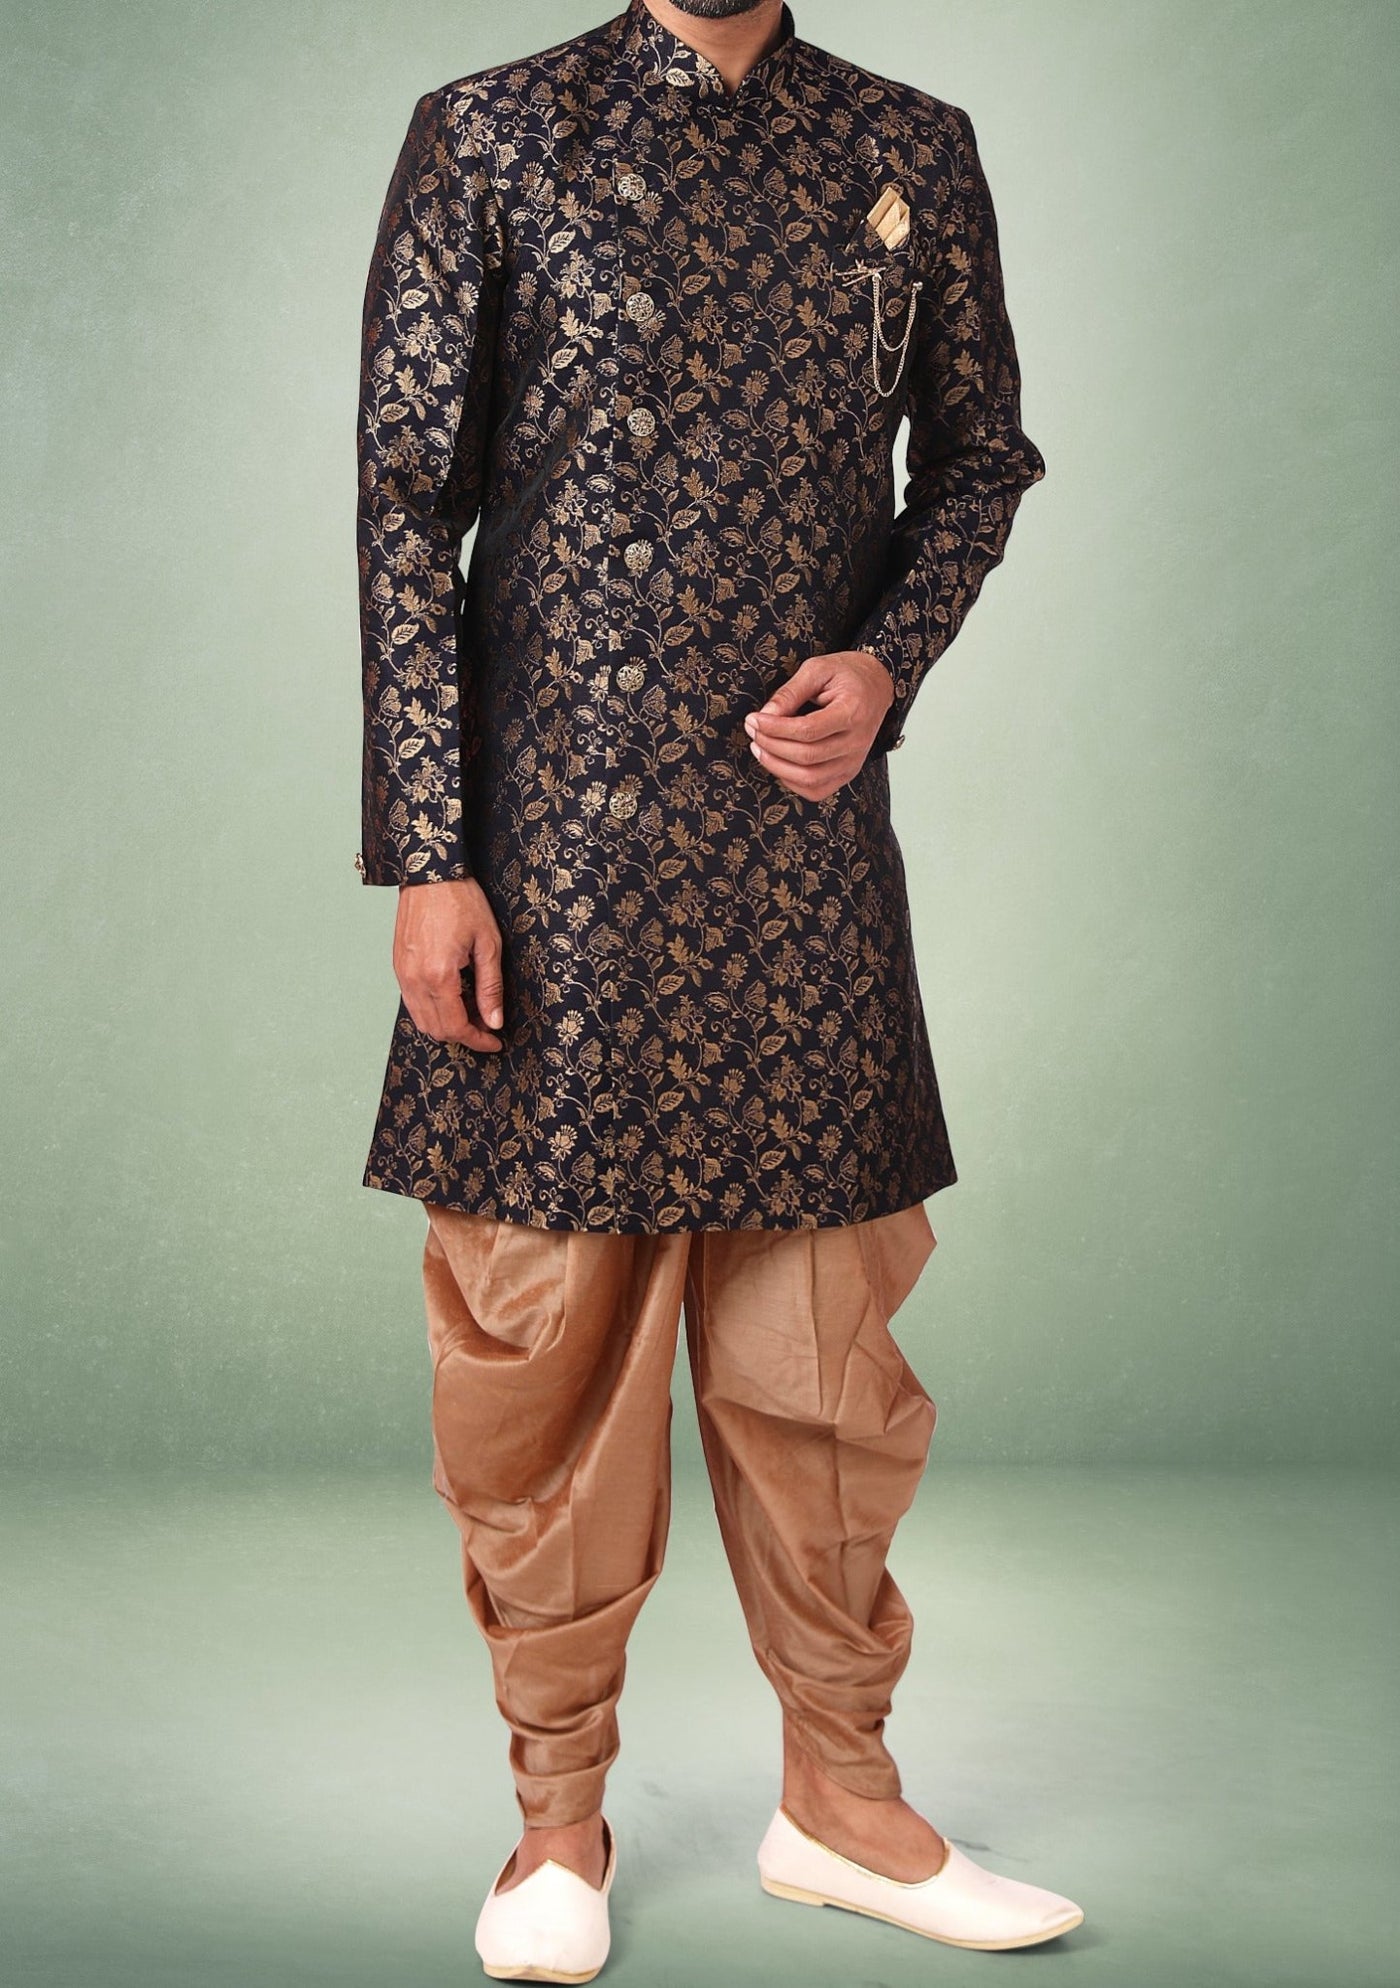 Men's Indo Western Party Wear Sherwani Suit - db18056